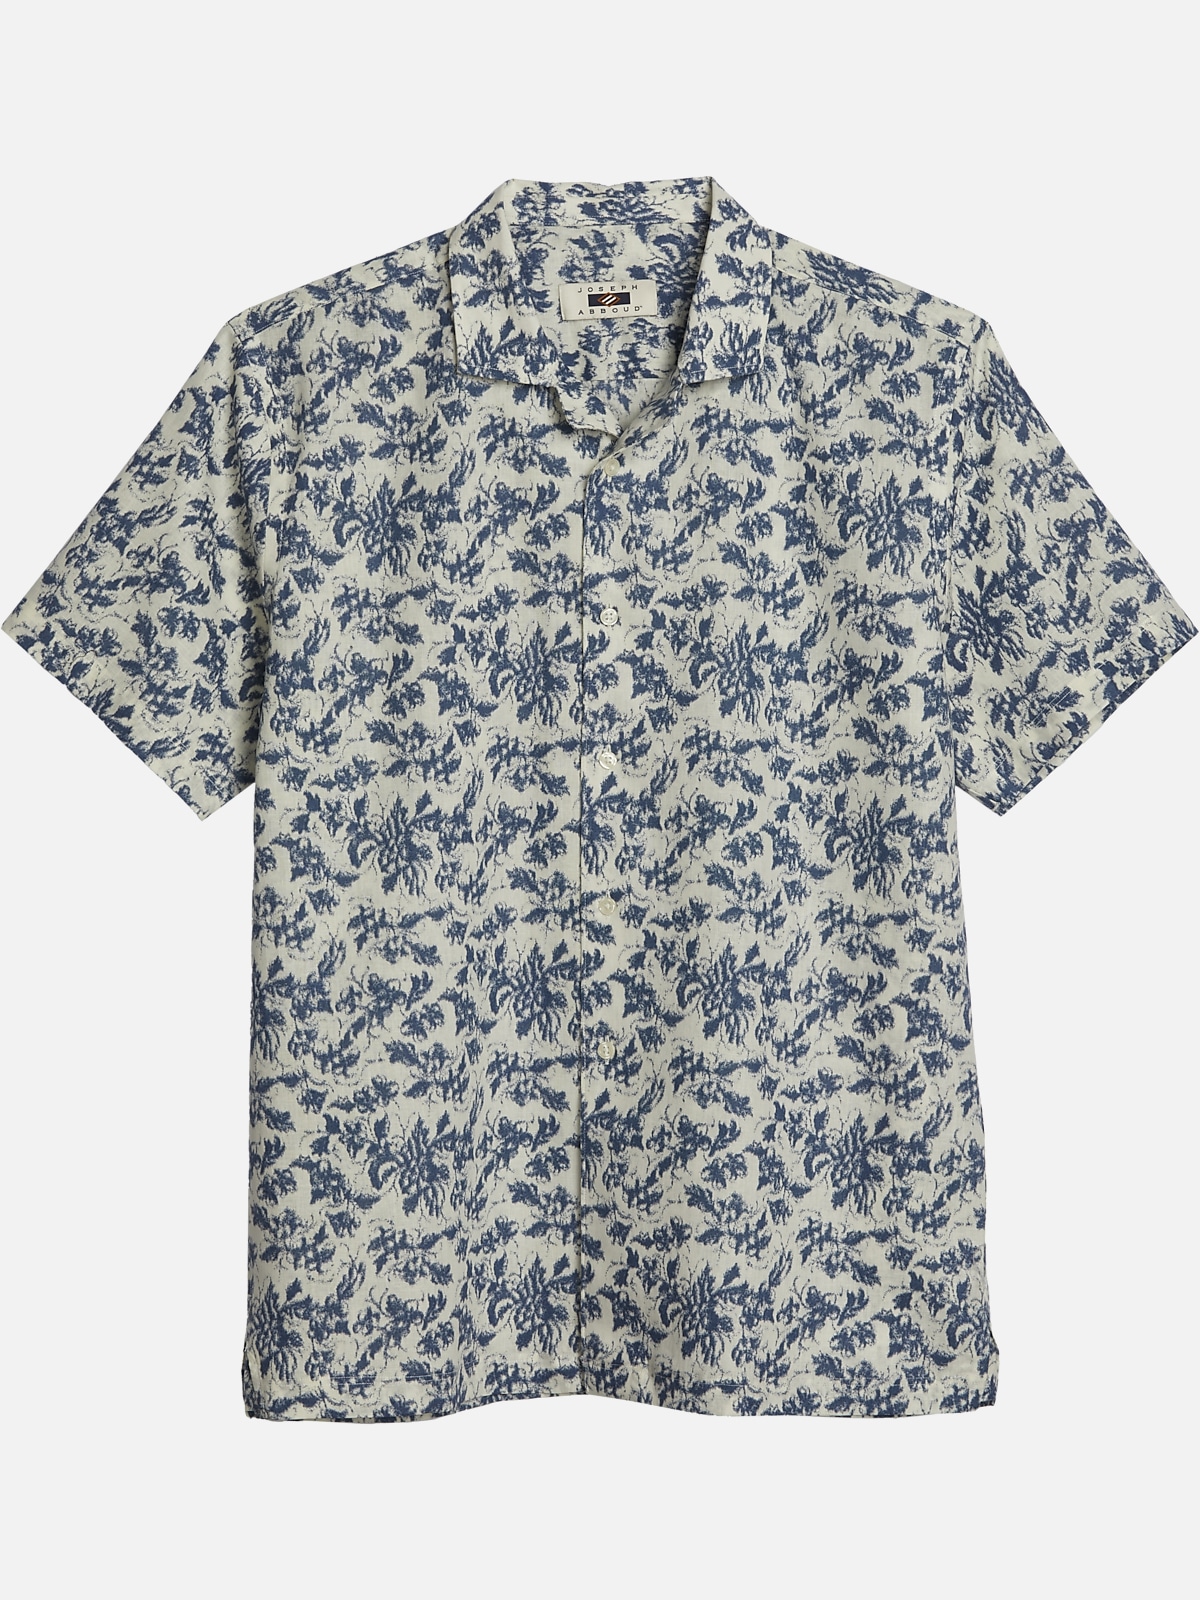 Joseph Abboud Modern Fit Floral Sport Shirt | All Clearance $39.99| Men ...